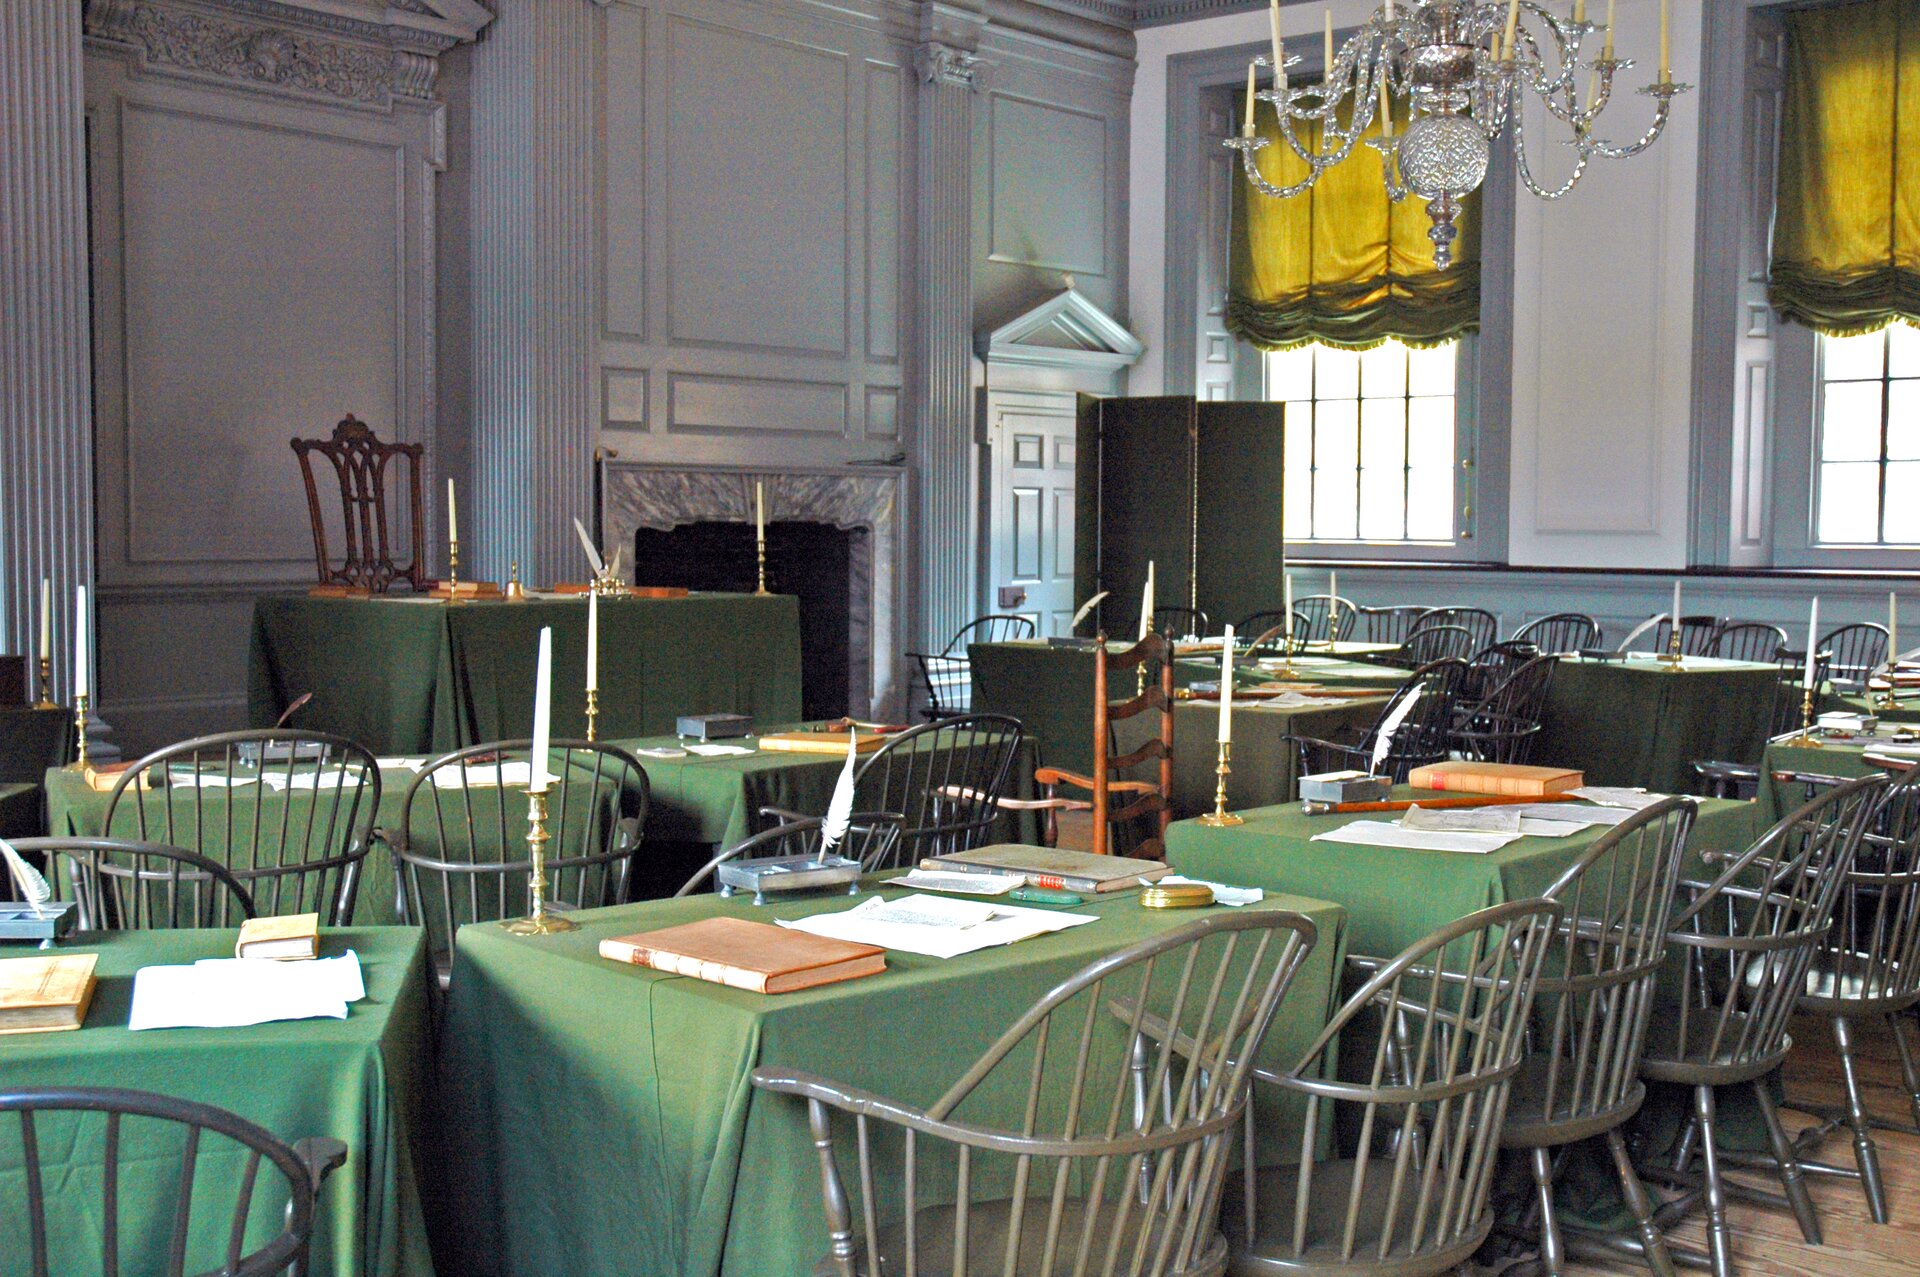 Pokój, w którym przyjęto Deklarację Niepodległości w Muzeum w Filadelfii Pokój, w którym przyjęto Deklarację Niepodległości w Muzeum w Filadelfii Źródło: Rdsmith4, Wikimedia Commons, licencja: CC BY-SA 2.5.